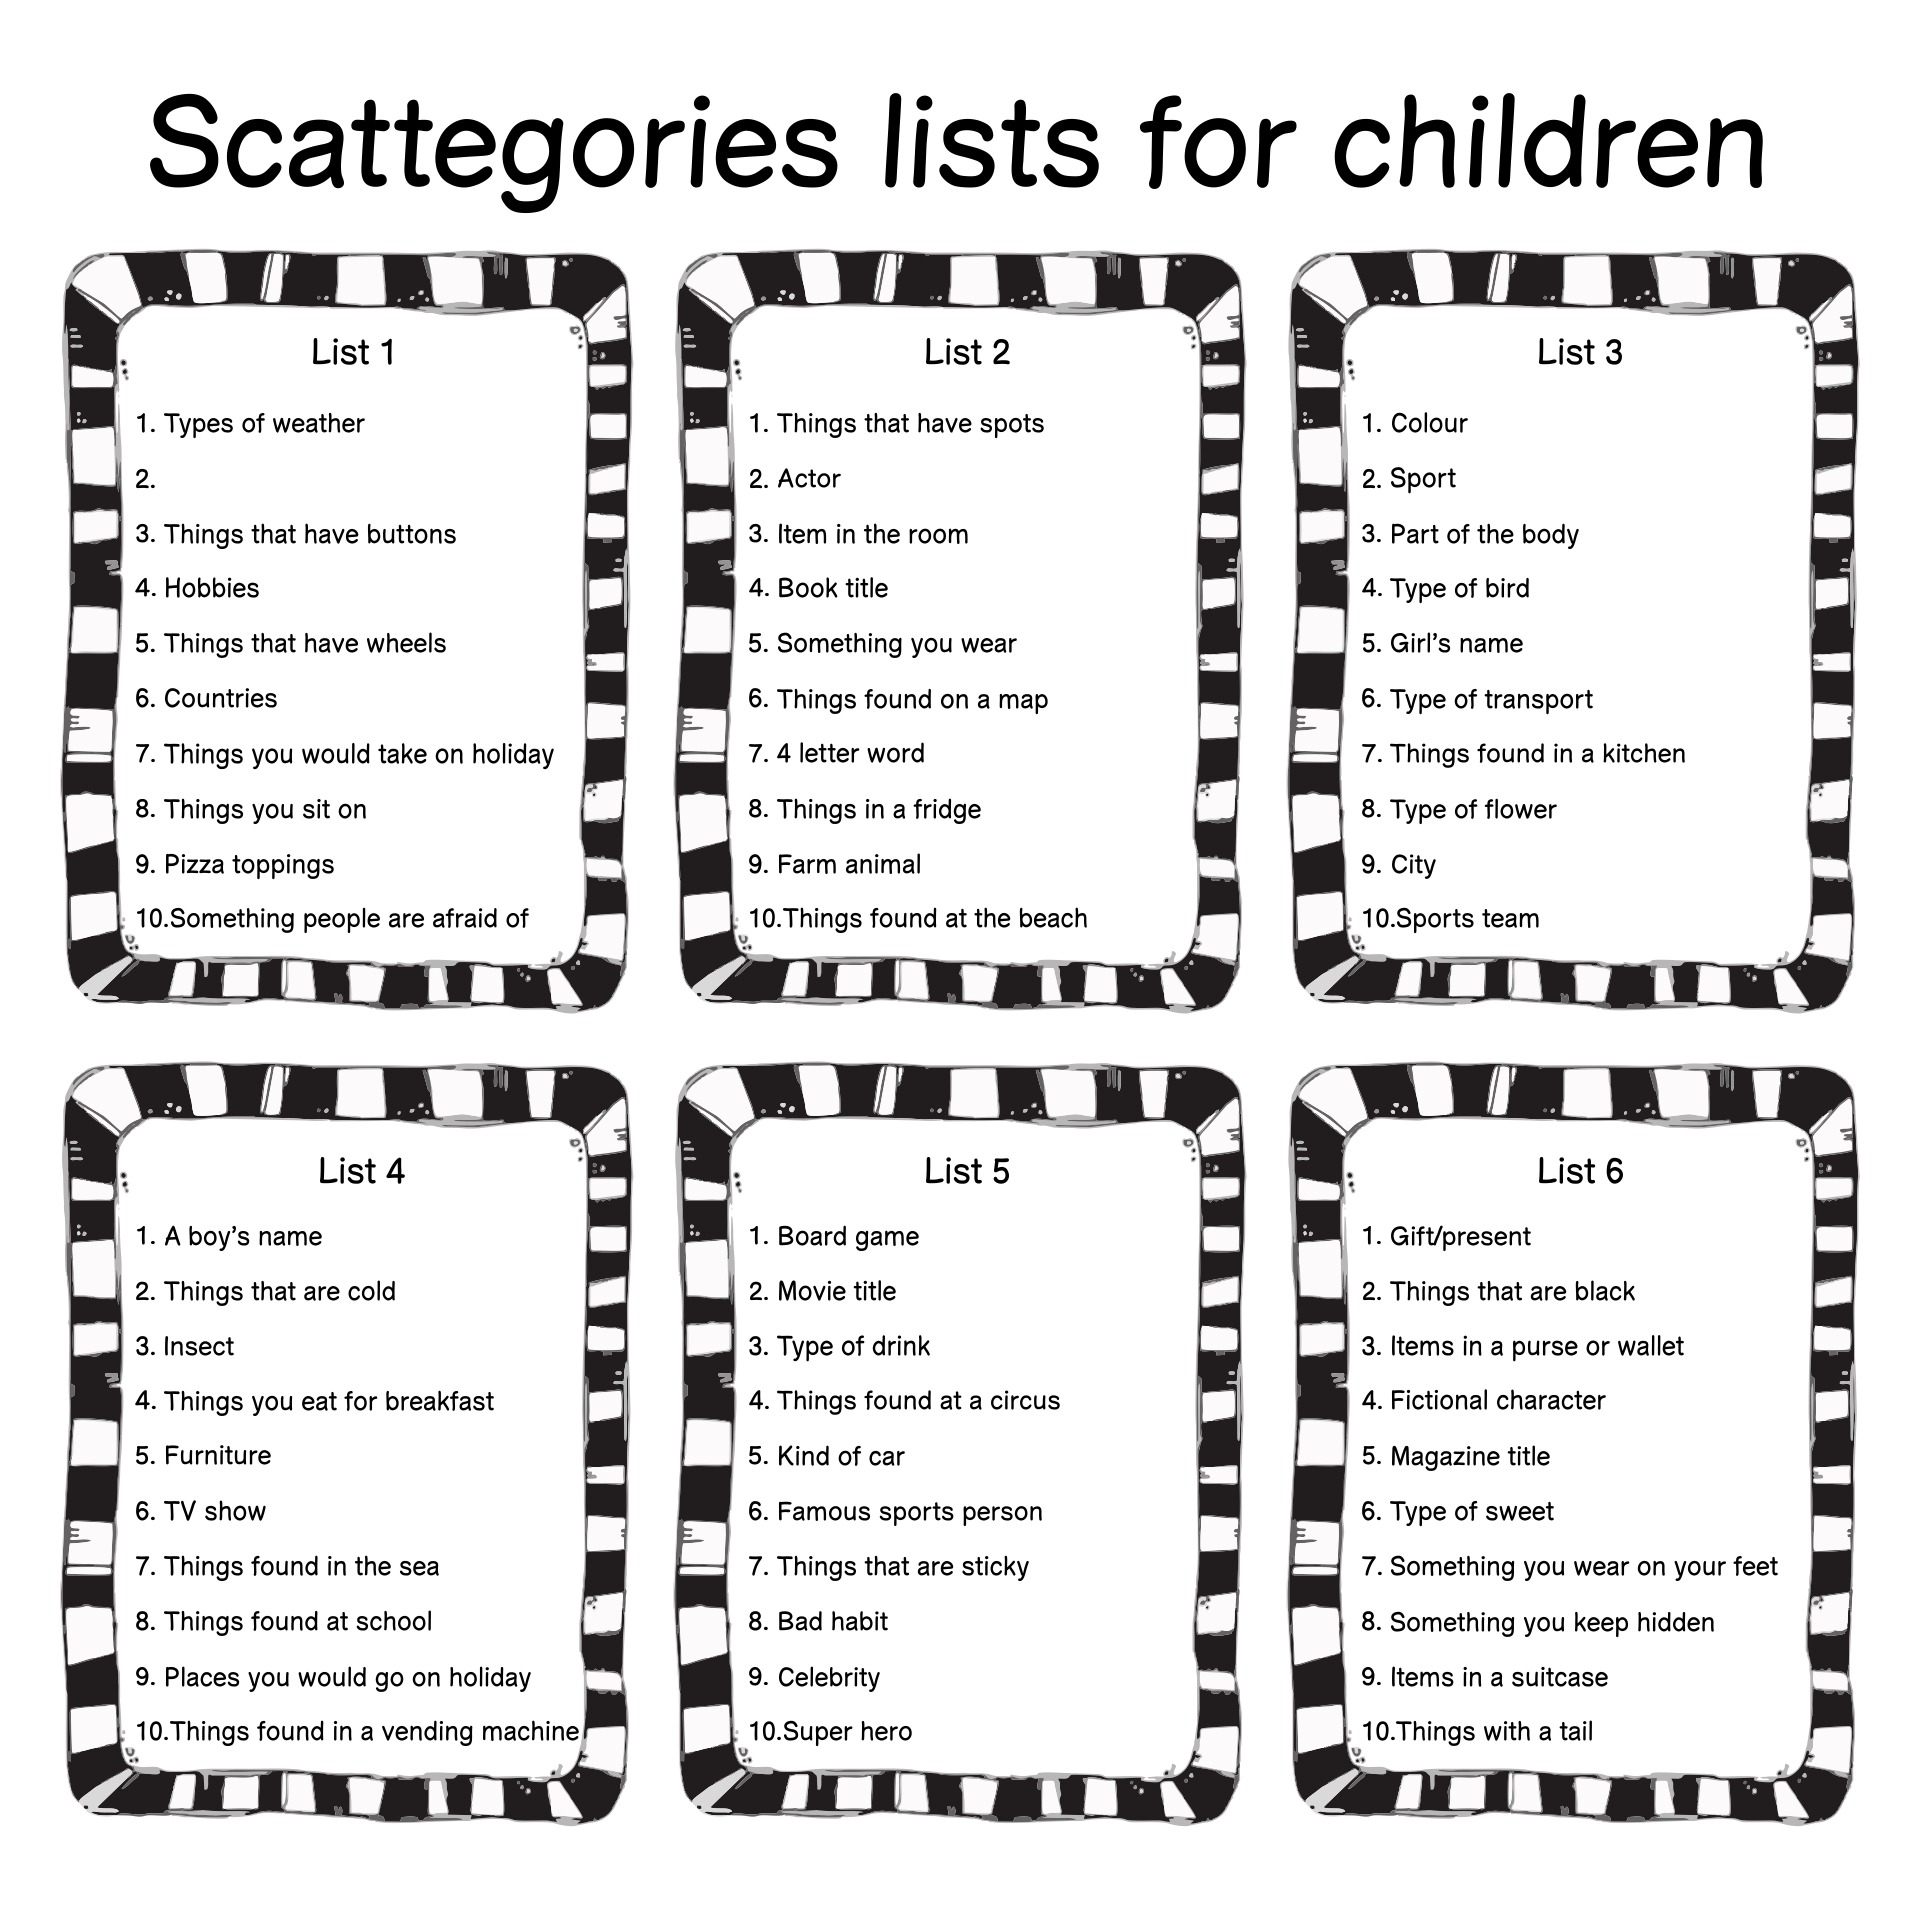 scattergories categories